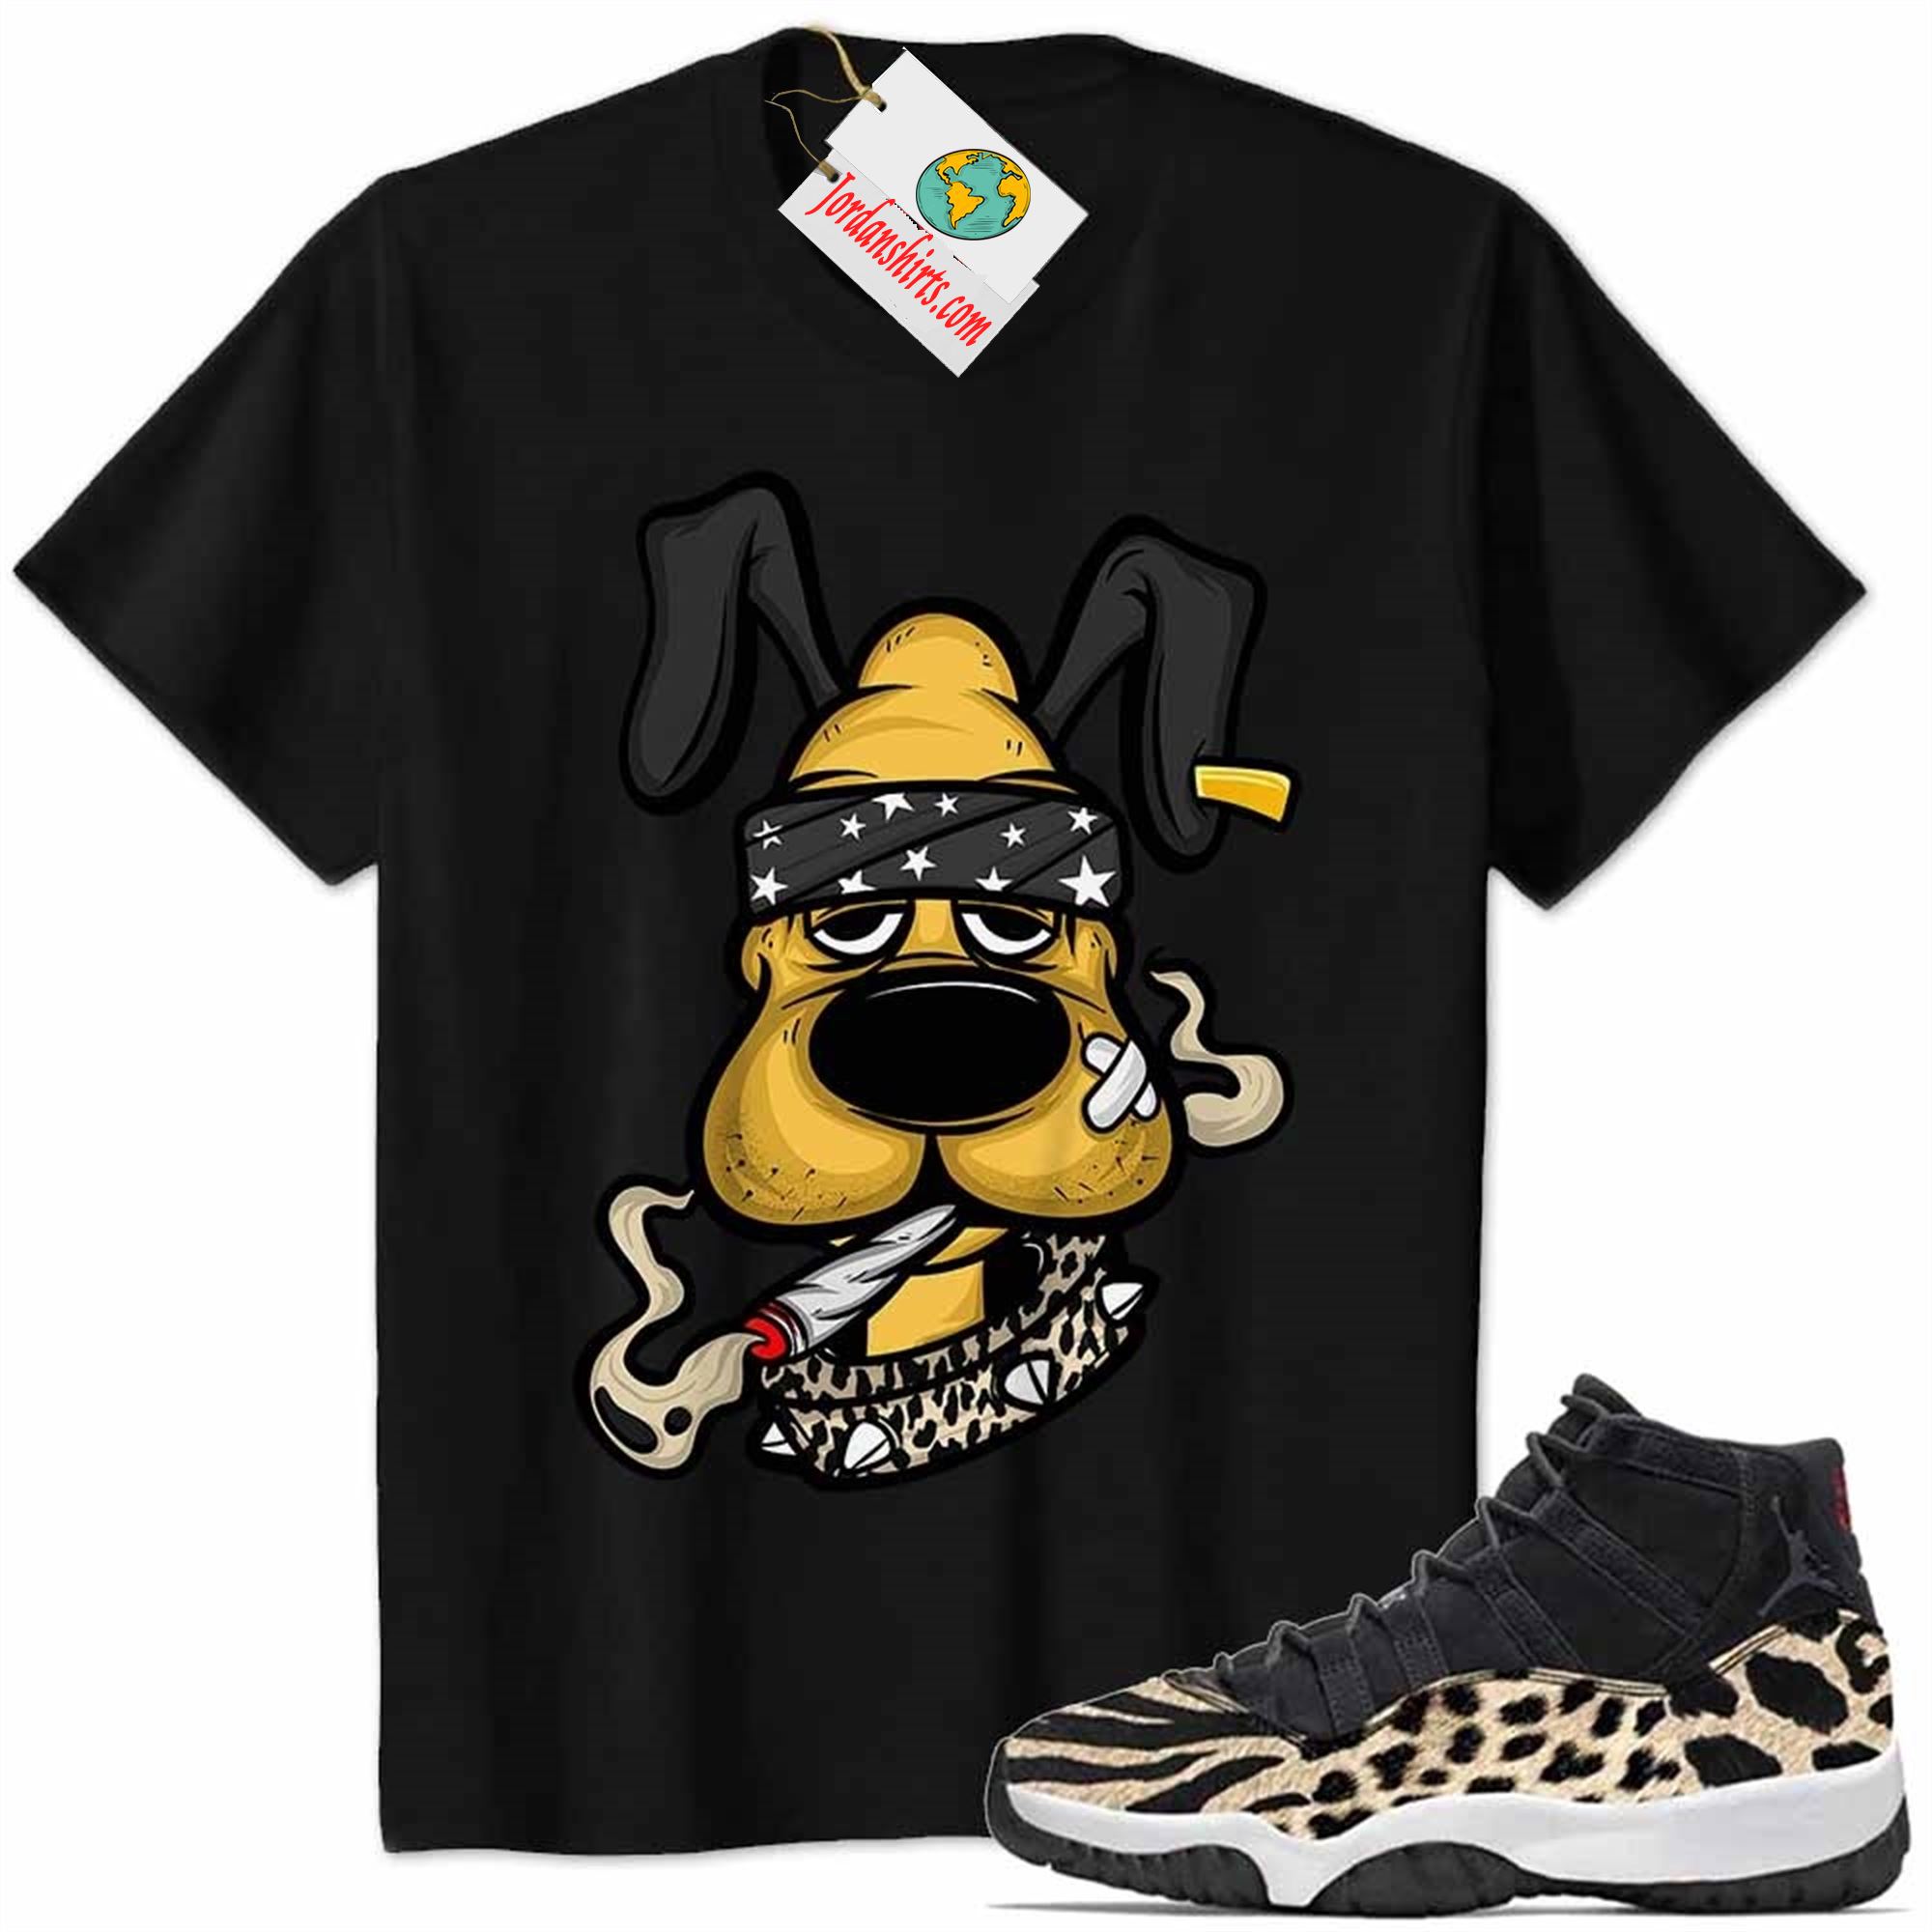 Jordan 11 Shirt, Gangster Pluto Smoke Weed Black Air Jordan 11 Animal Print 11s Size Up To 5xl